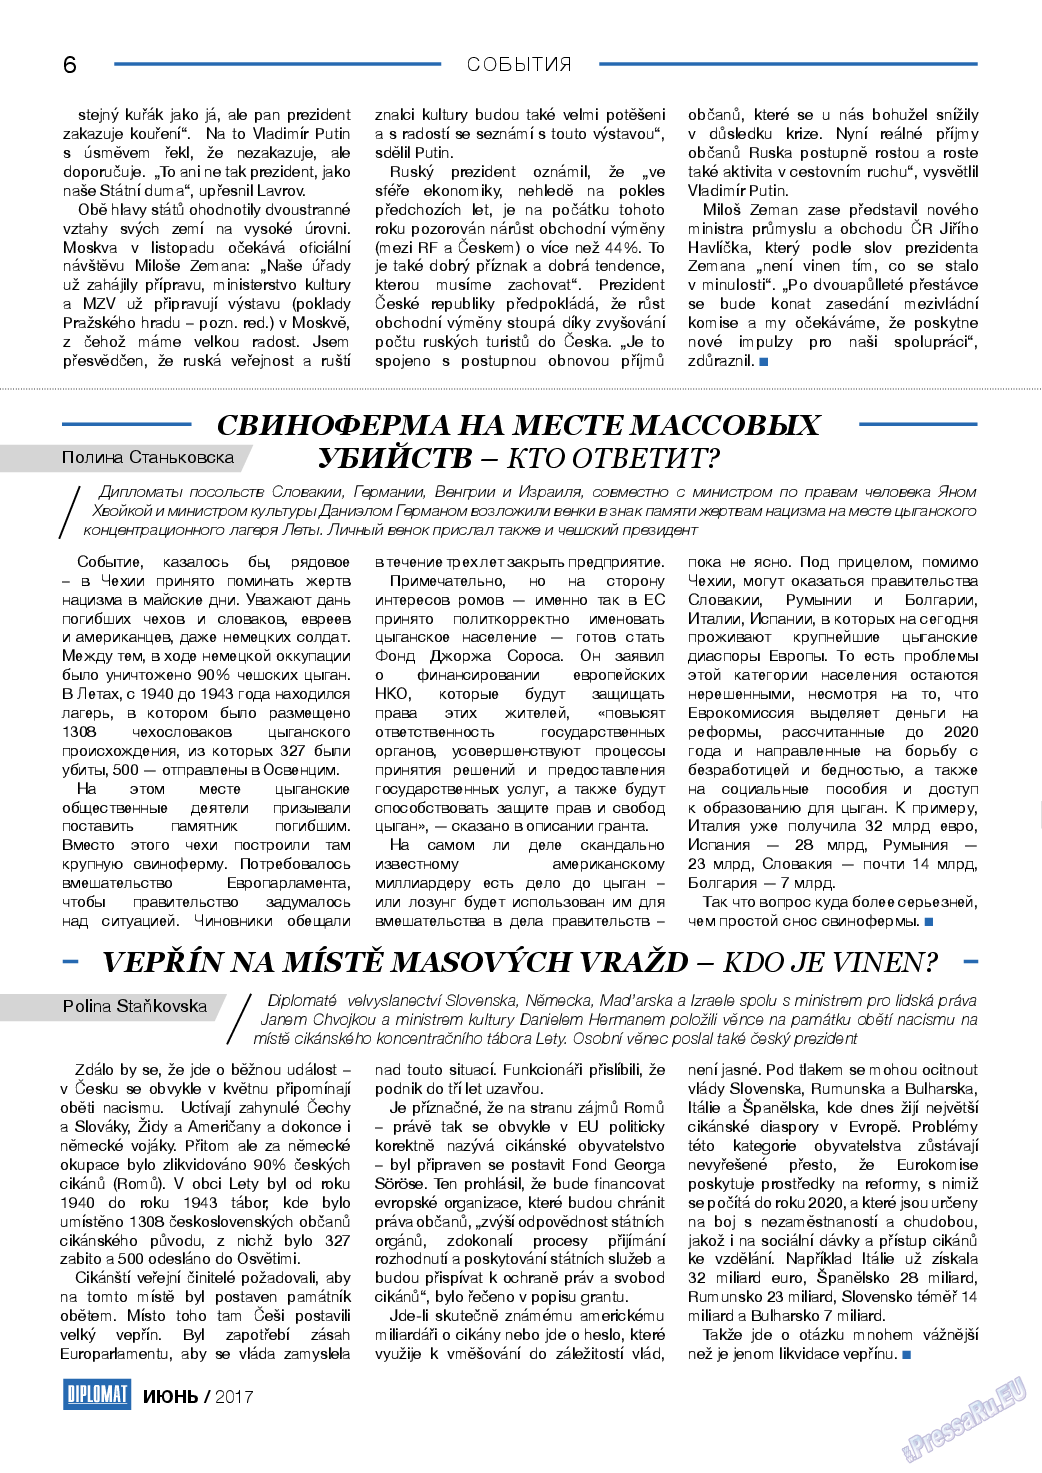 Diplomat, газета. 2017 №93 стр.6